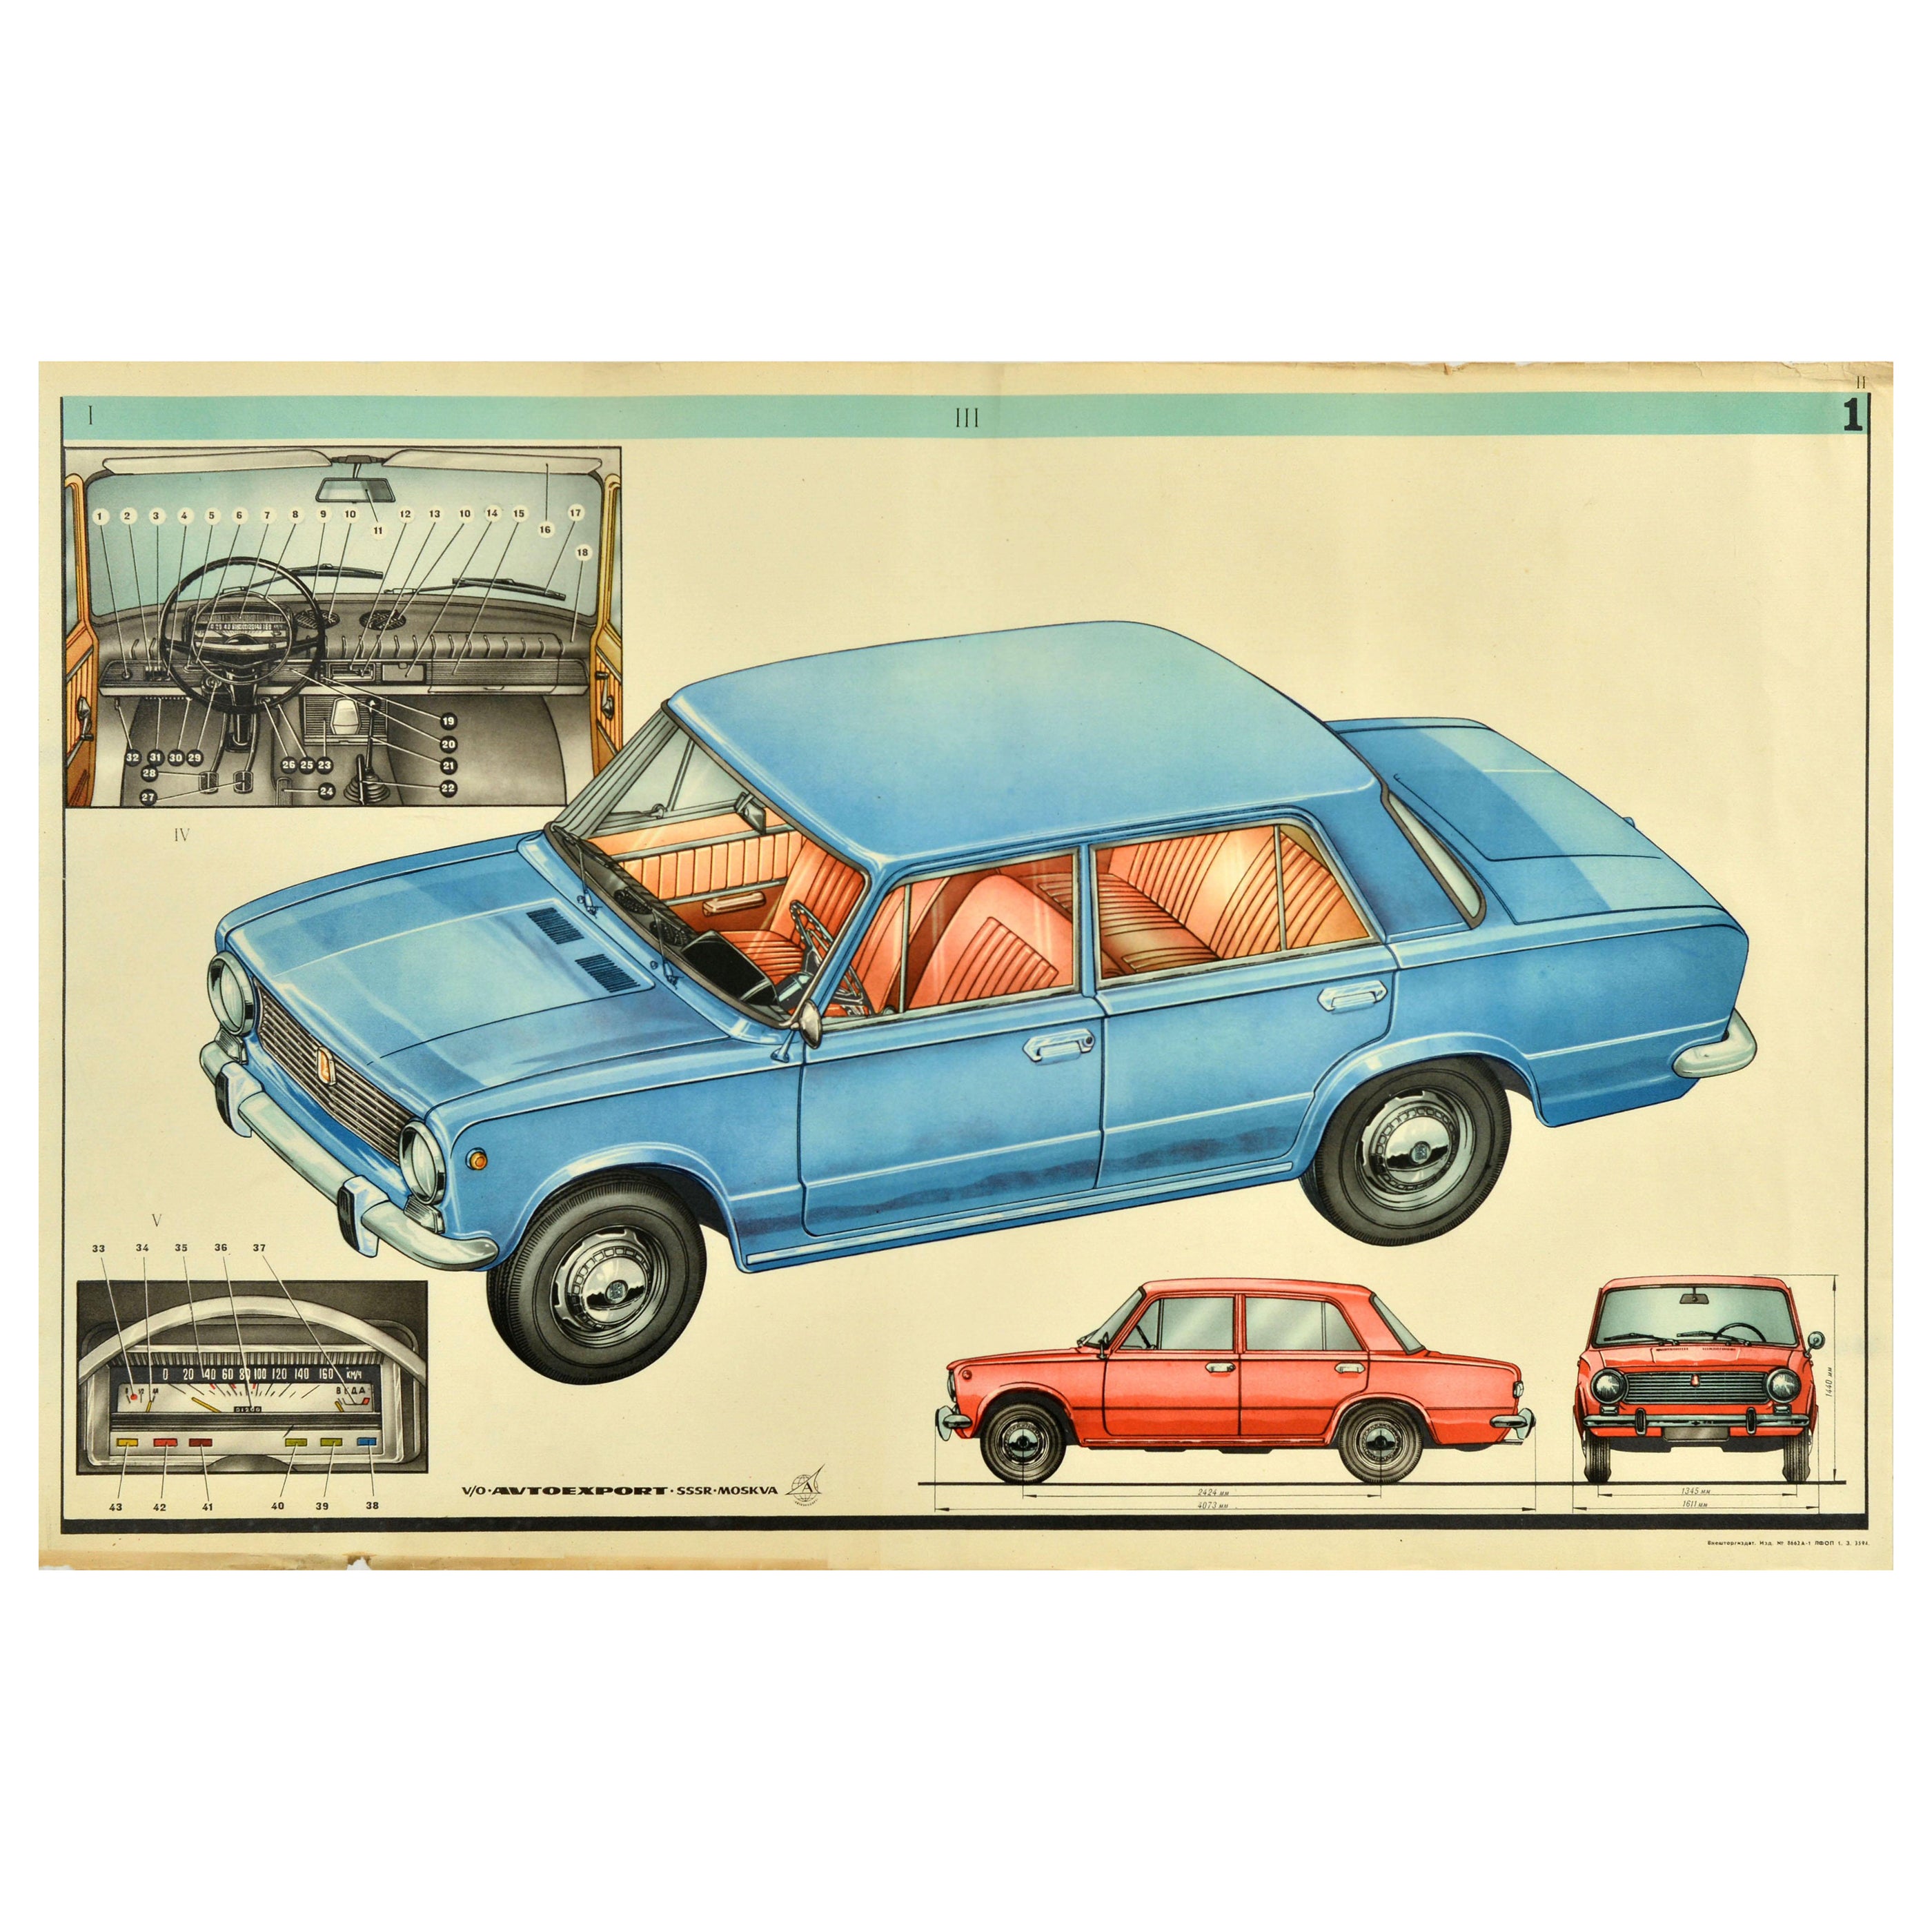 Affiche publicitaire originale de voitures soviétiques Lada Car AvtoVAZ URSS Moscou